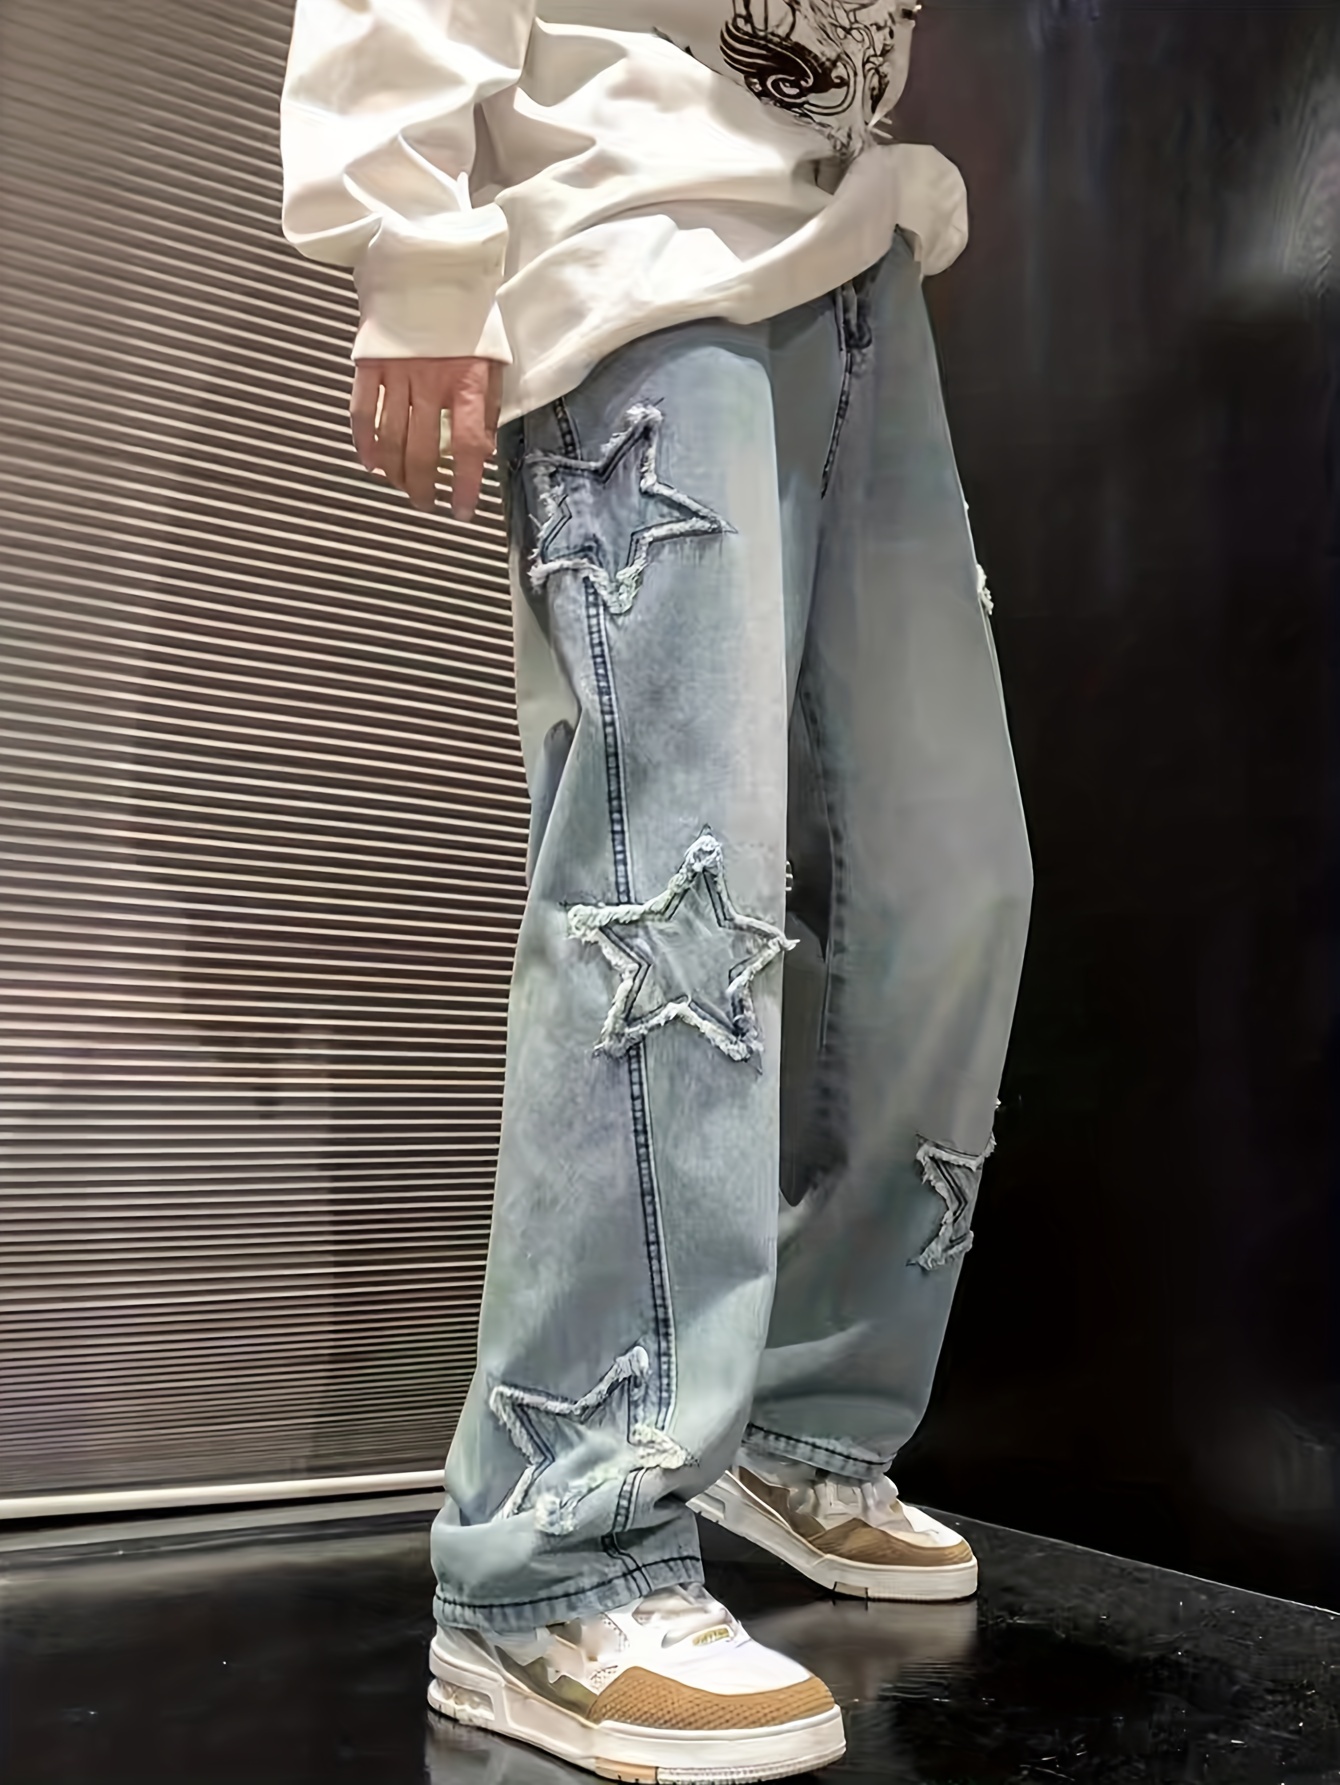 Y2k Men's Star Pattern Wide Leg Jeans, Casual Street Style Denim Pants